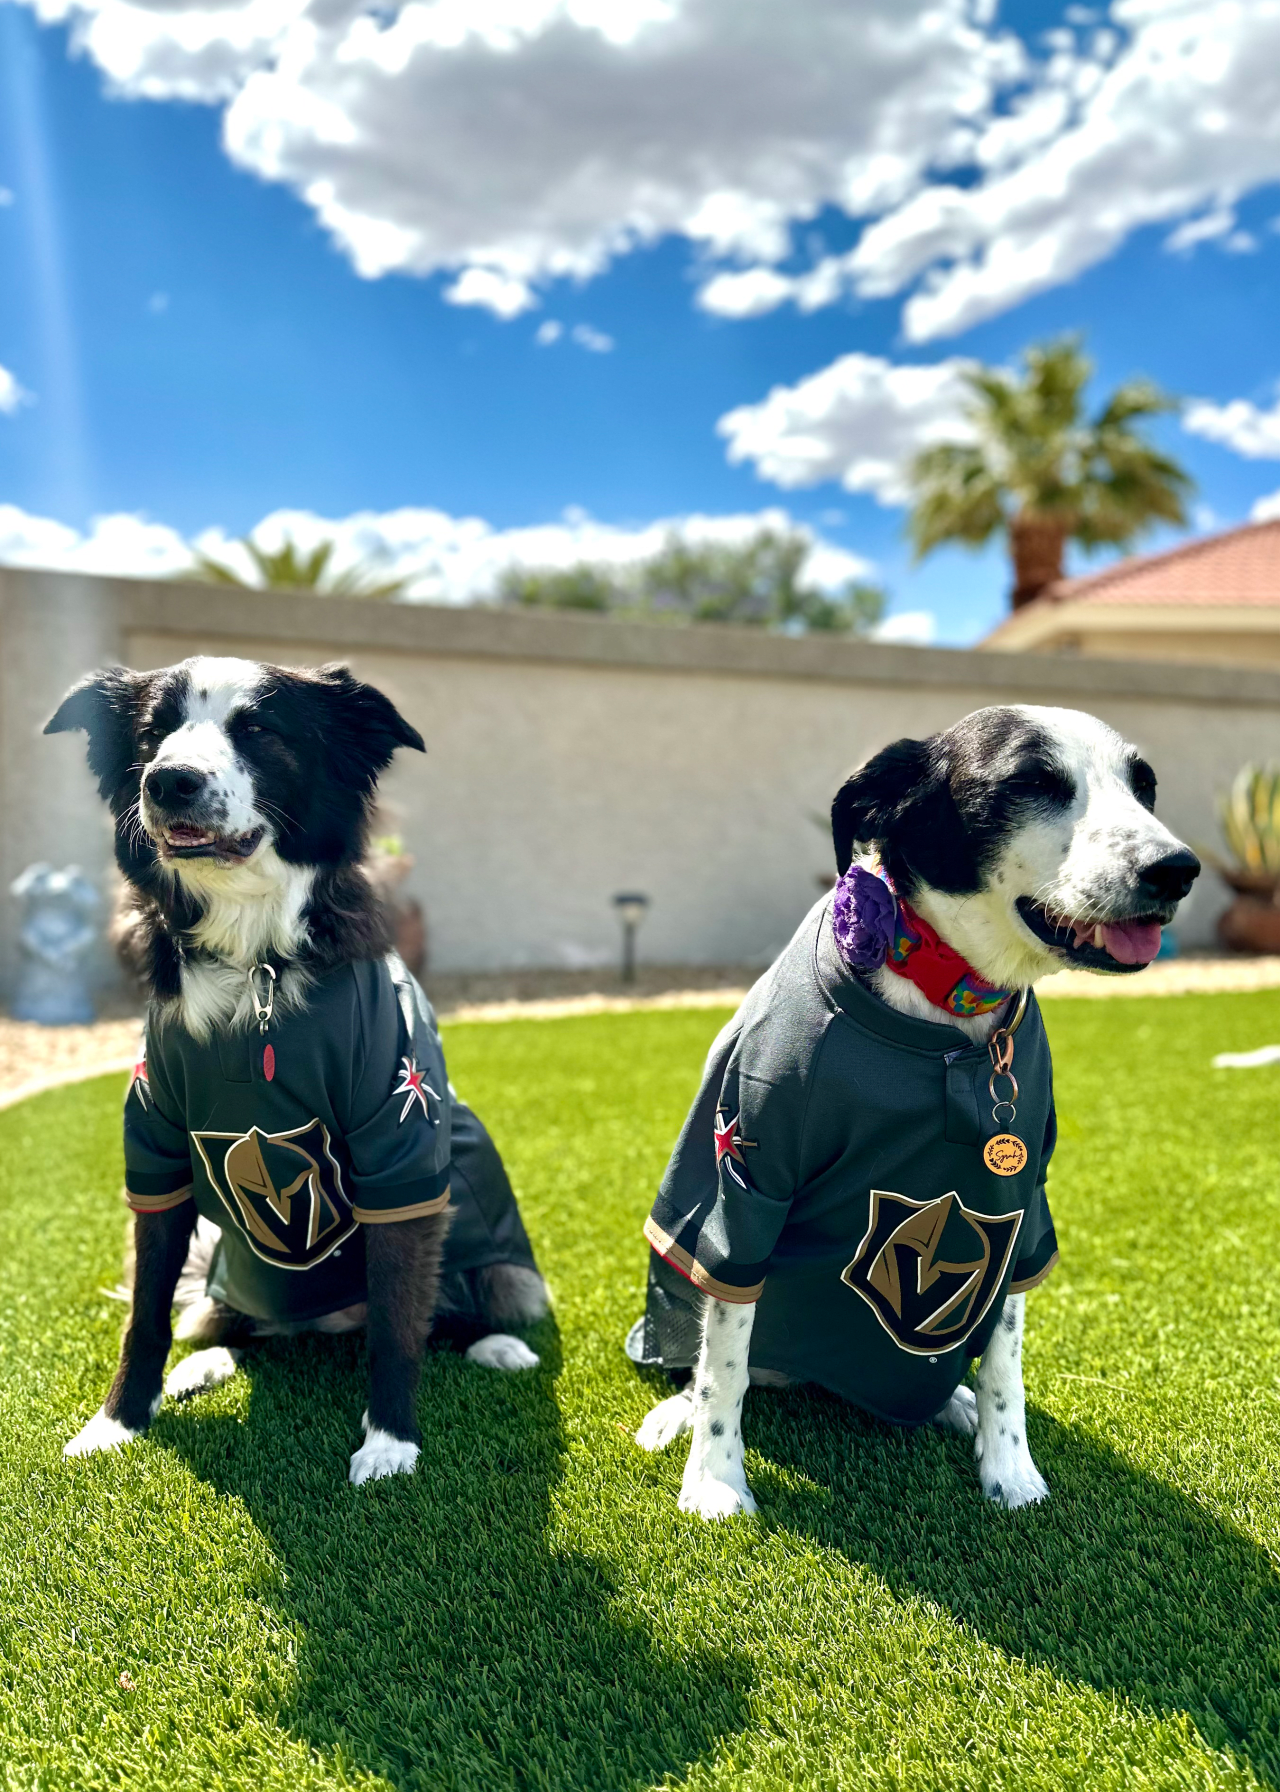 dogs in jerseys